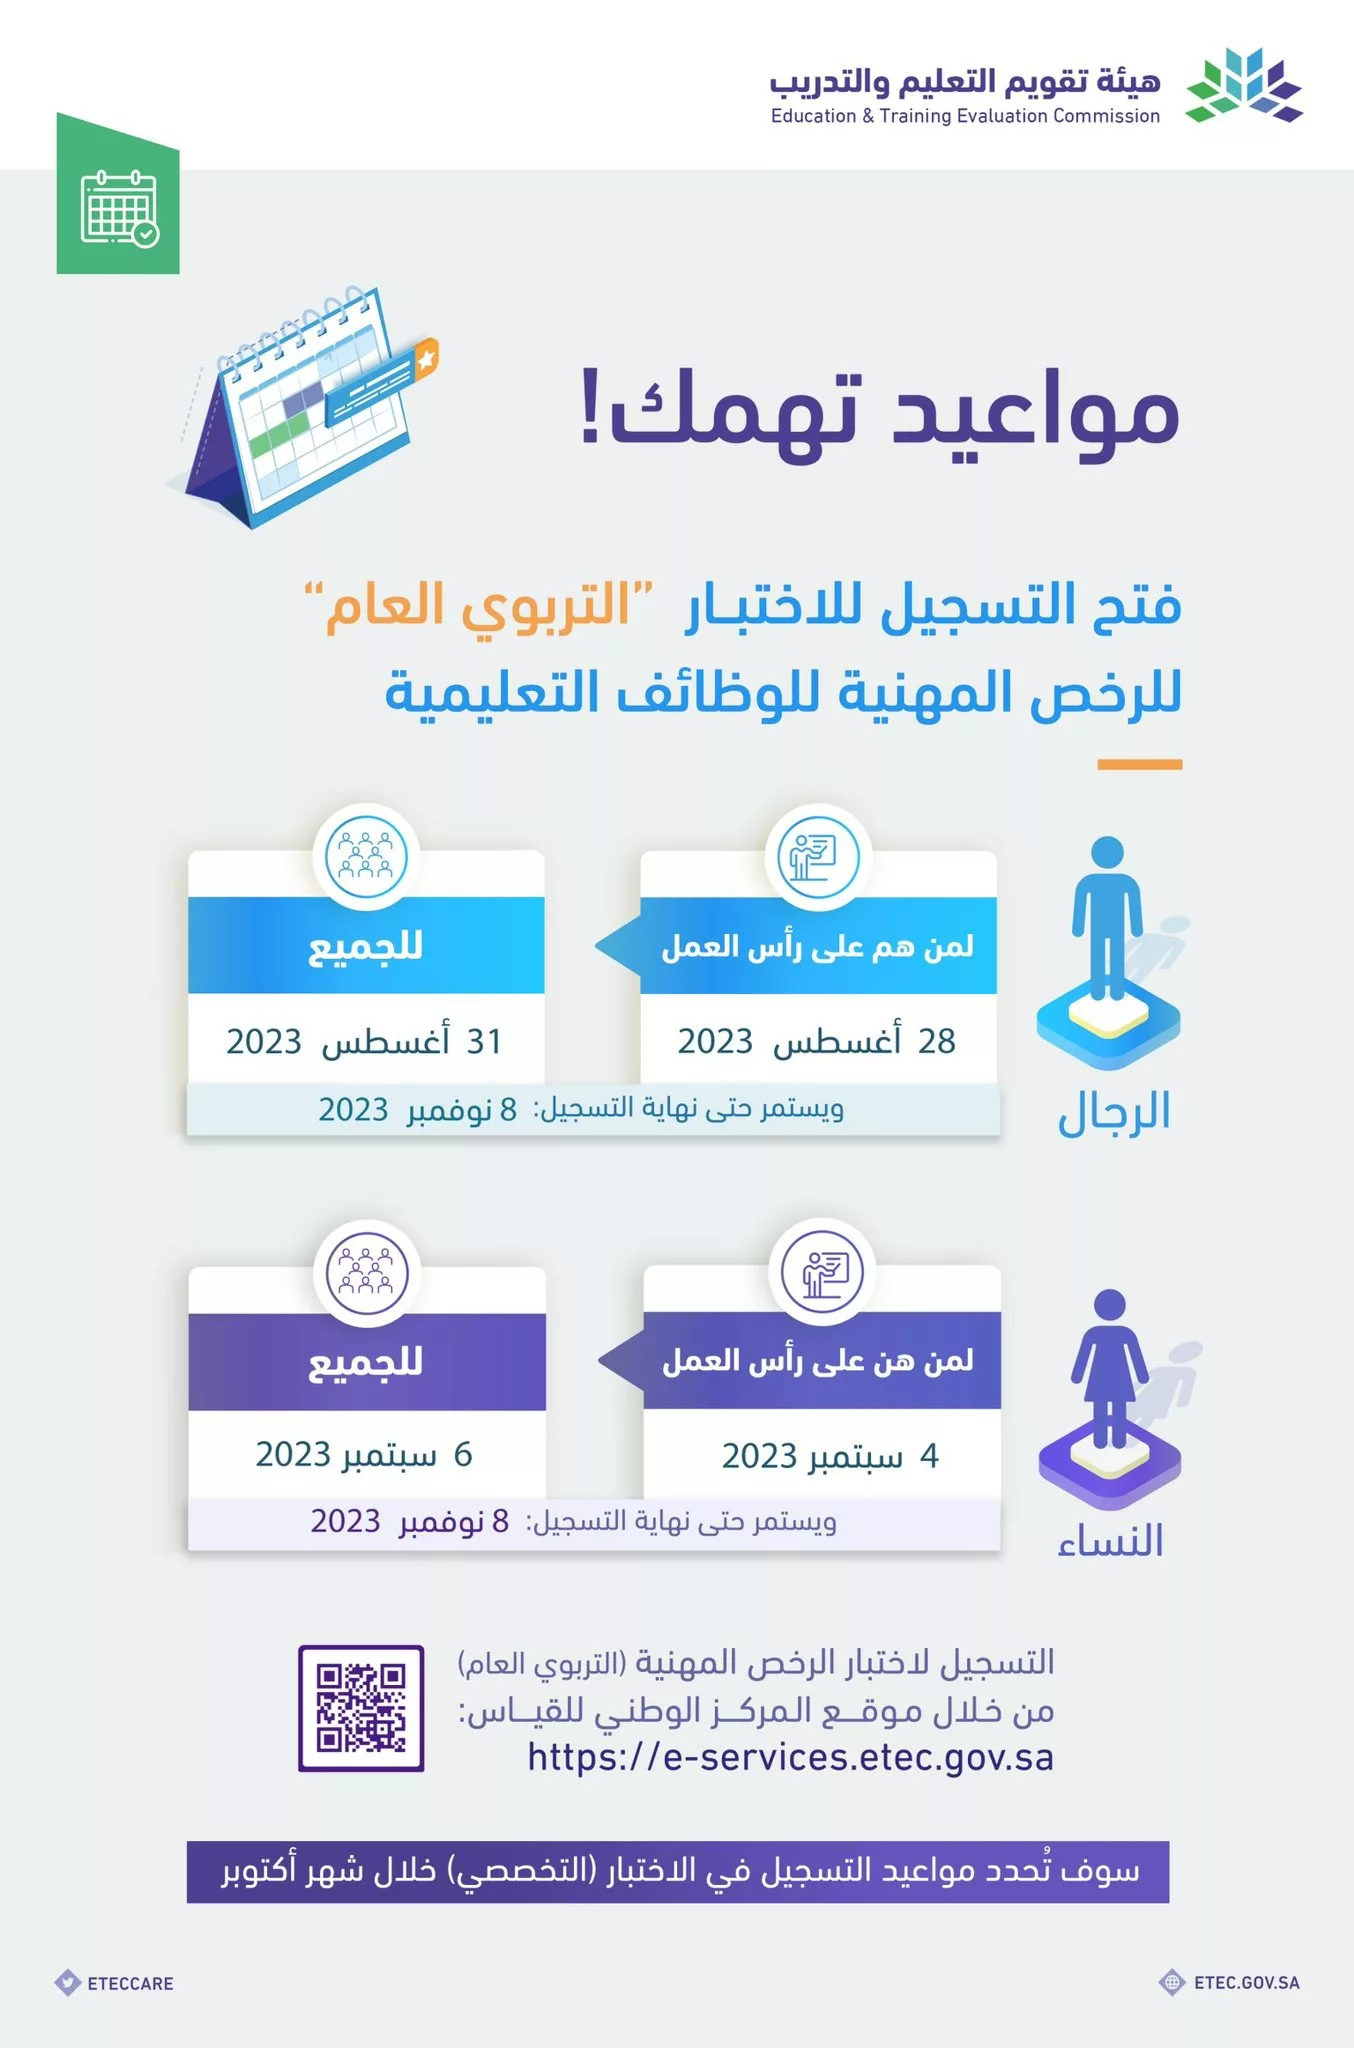 الرخص المهنية jpg - مدونة التقنية العربية